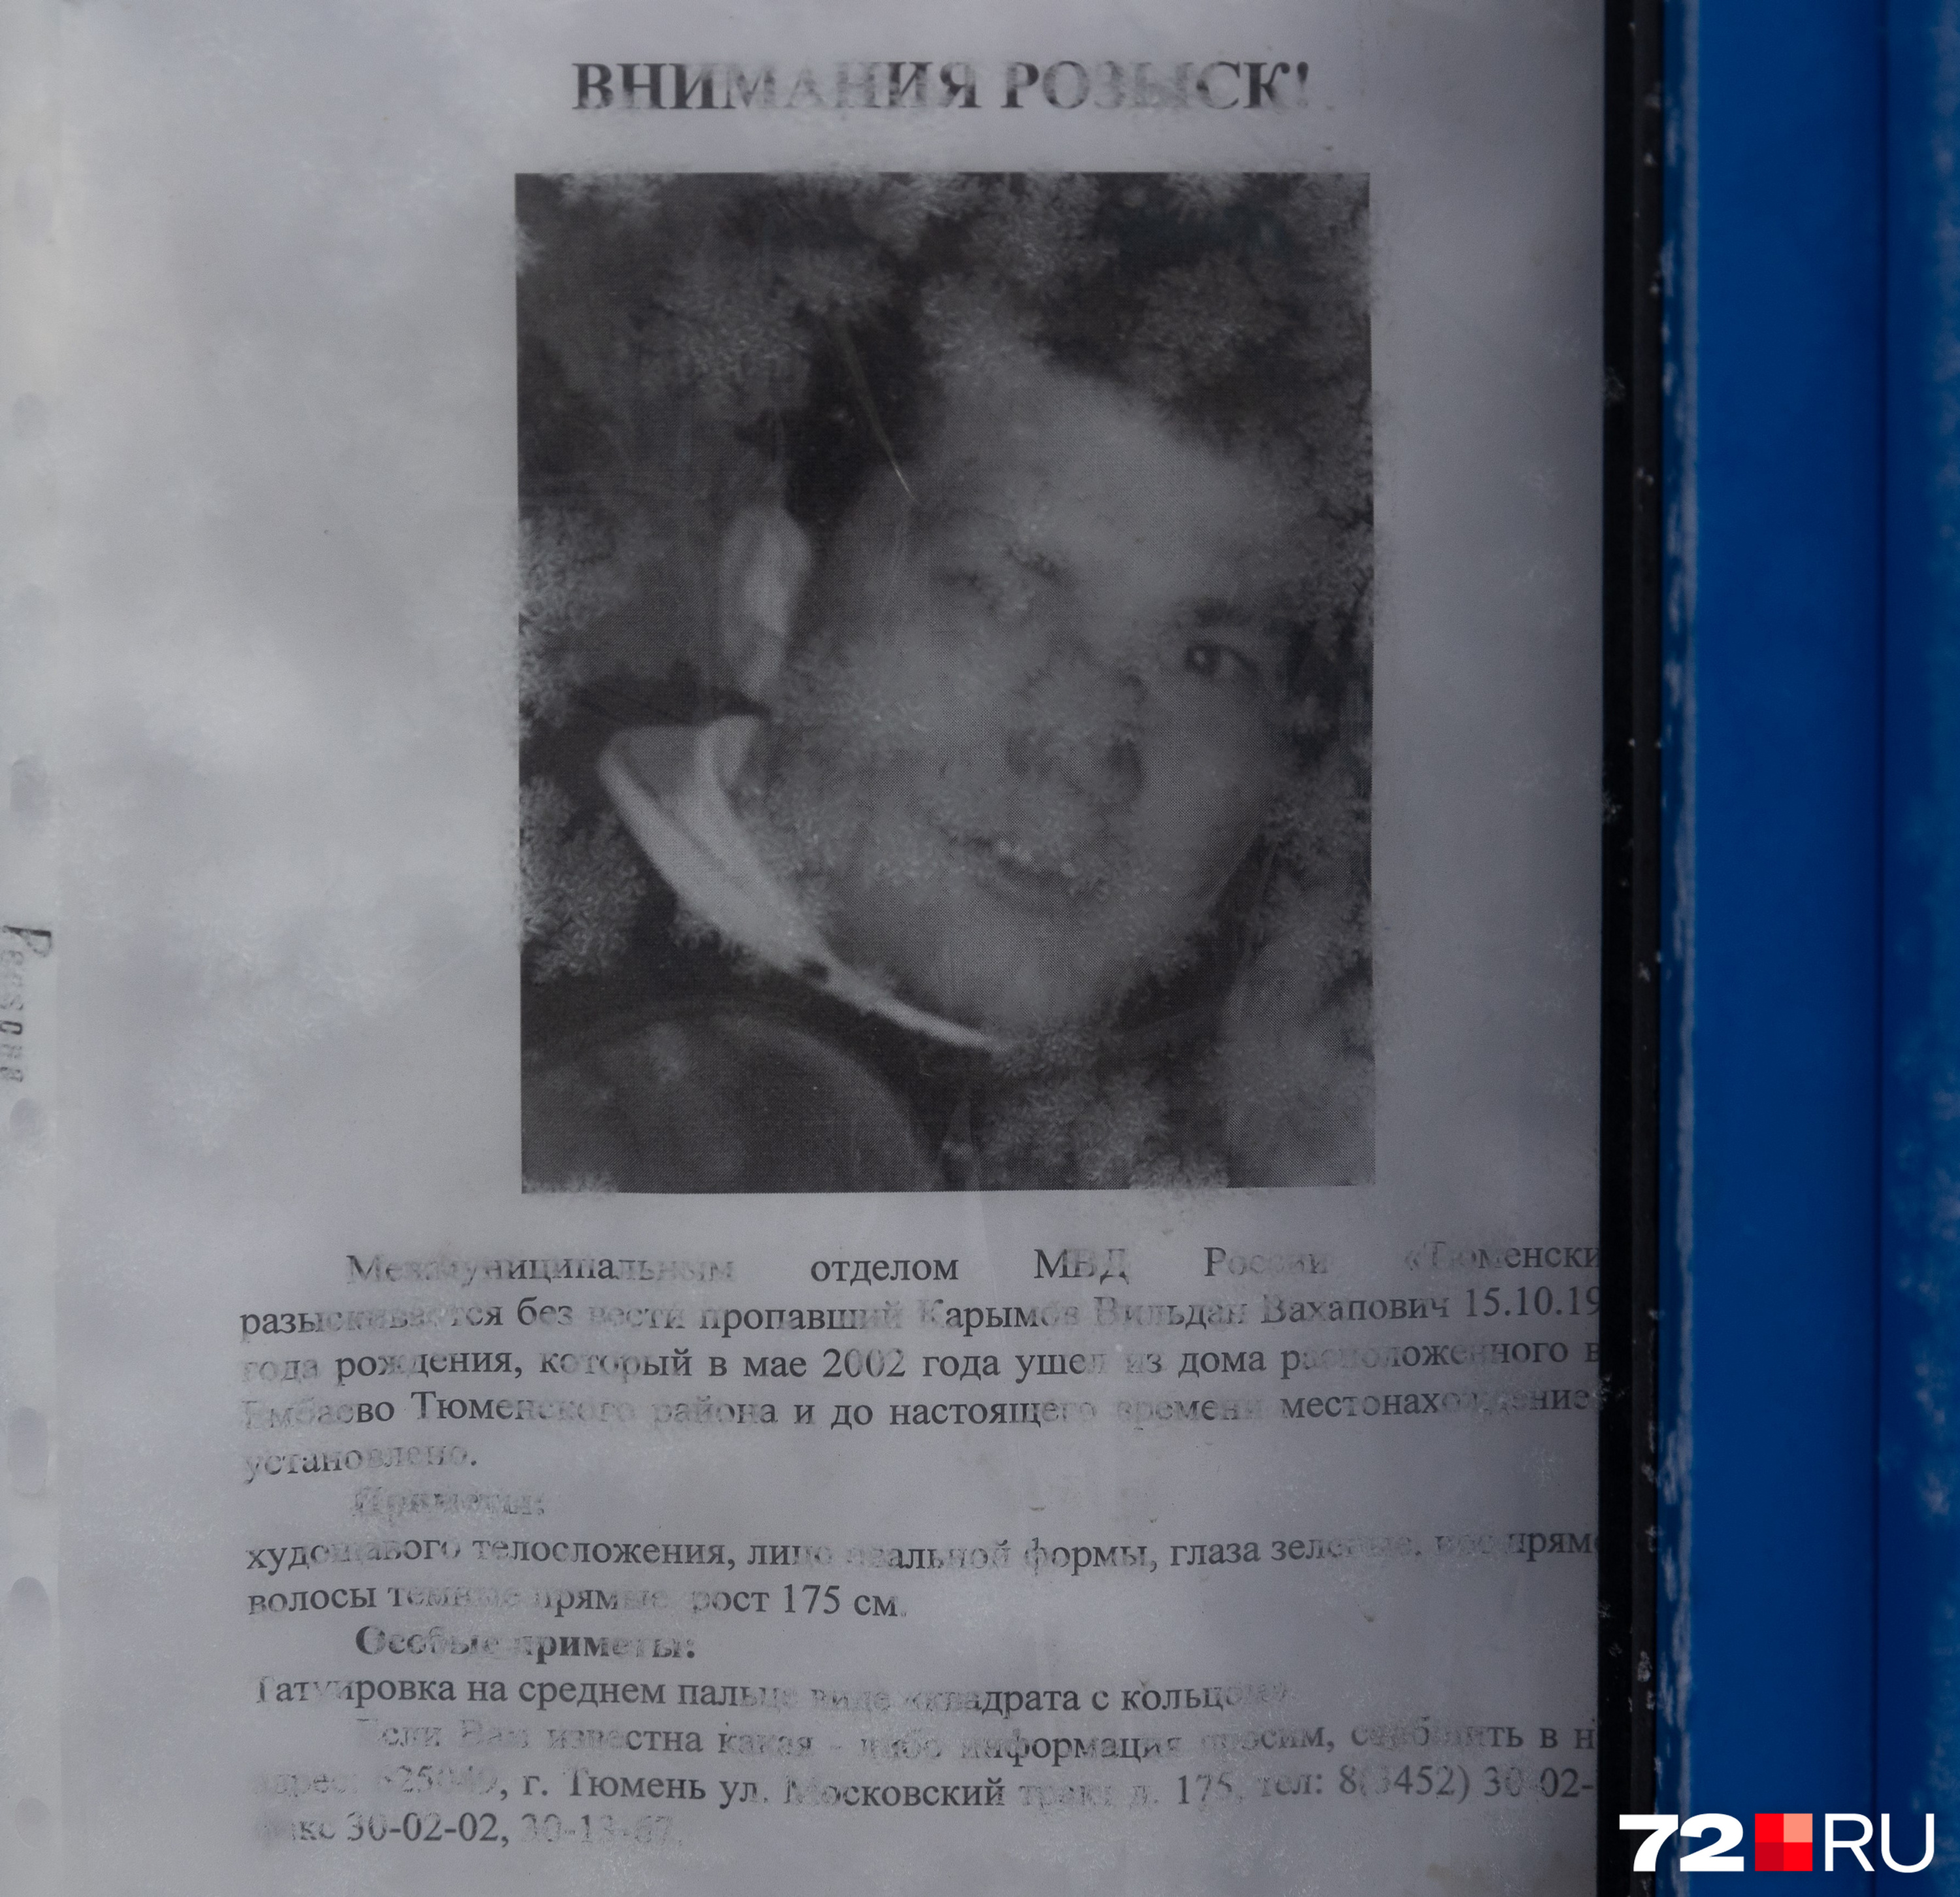 А этого человека ищут с 2002 года. Карымов Вильдан пропал после того, как вышел из дома в Ембаево